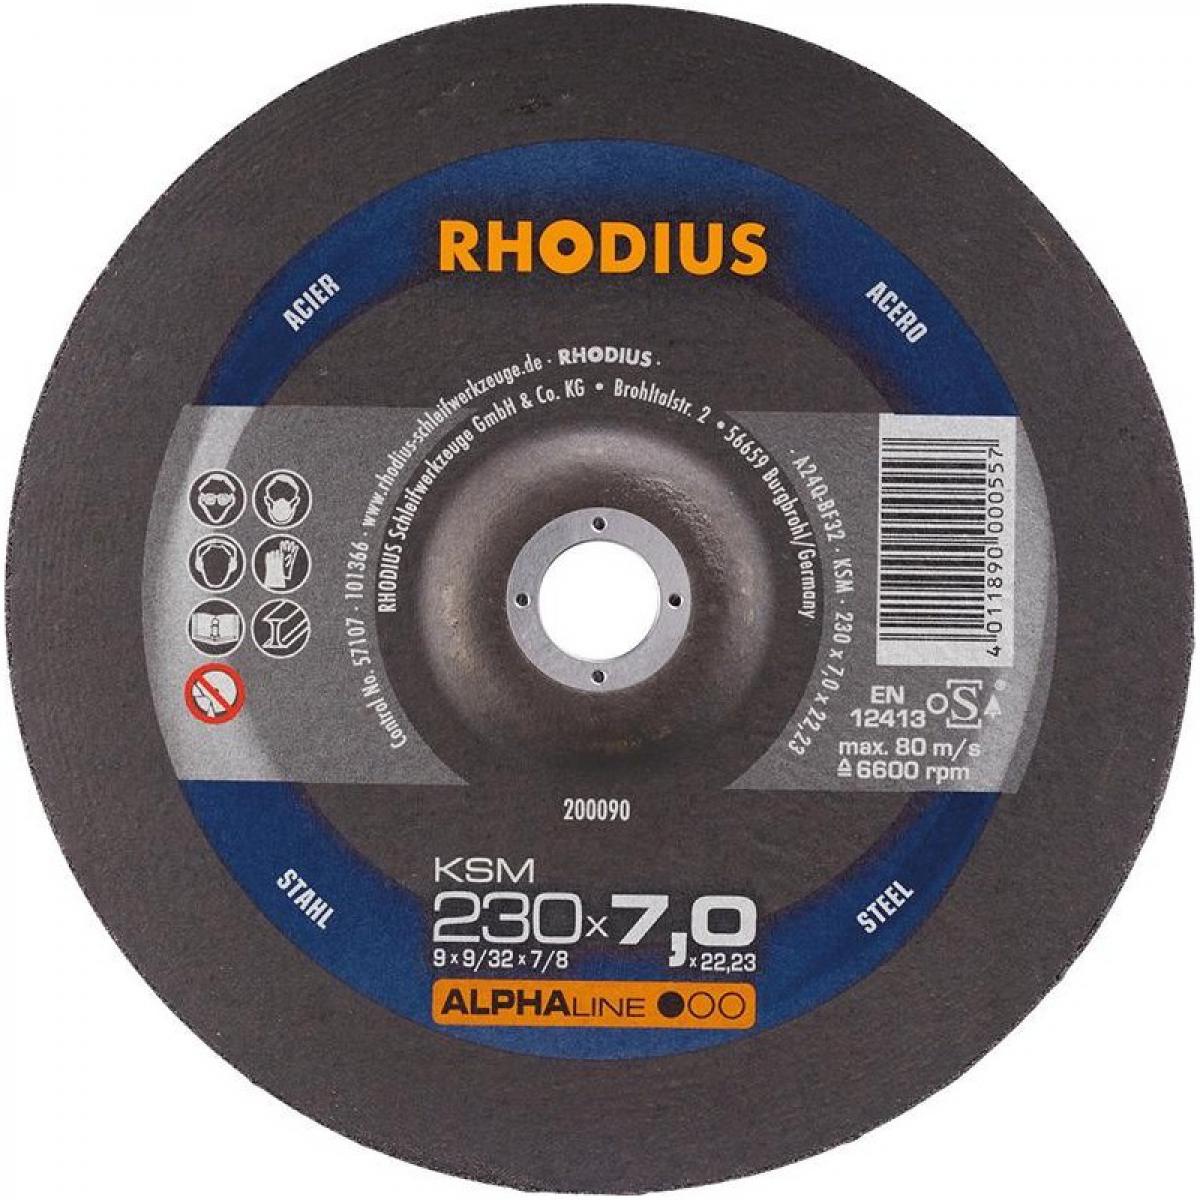 Rhodius - Disque de coupe KSM 230 x 7,0mm Acier Rhodius - Outils de coupe